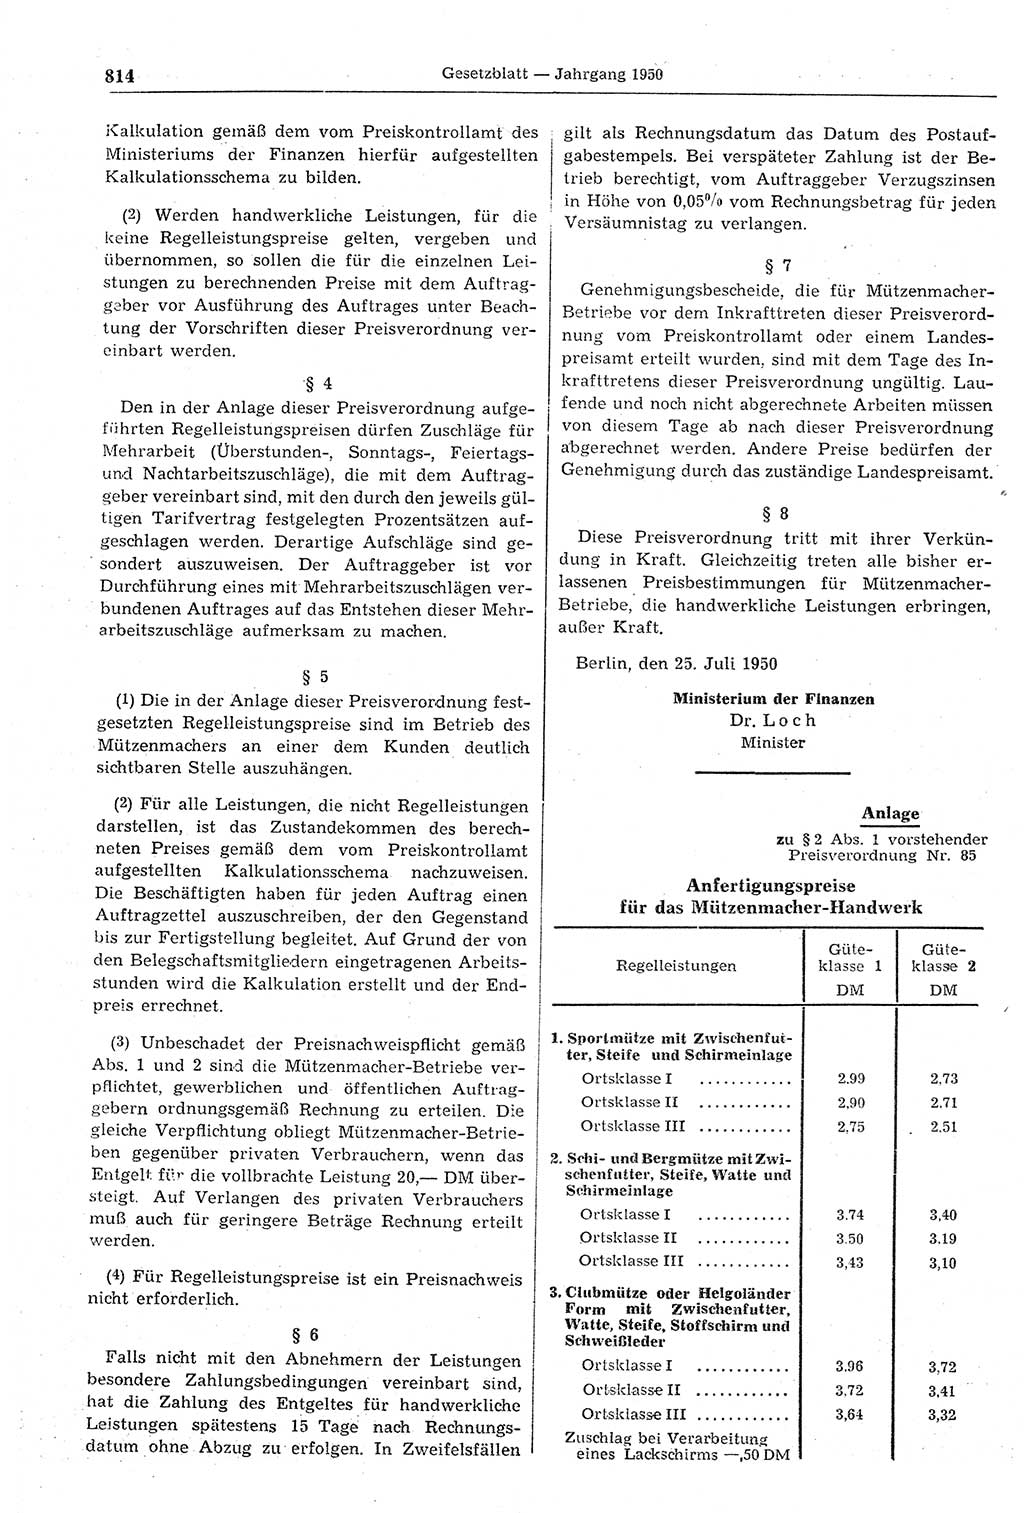 Gesetzblatt (GBl.) der Deutschen Demokratischen Republik (DDR) 1950, Seite 814 (GBl. DDR 1950, S. 814)